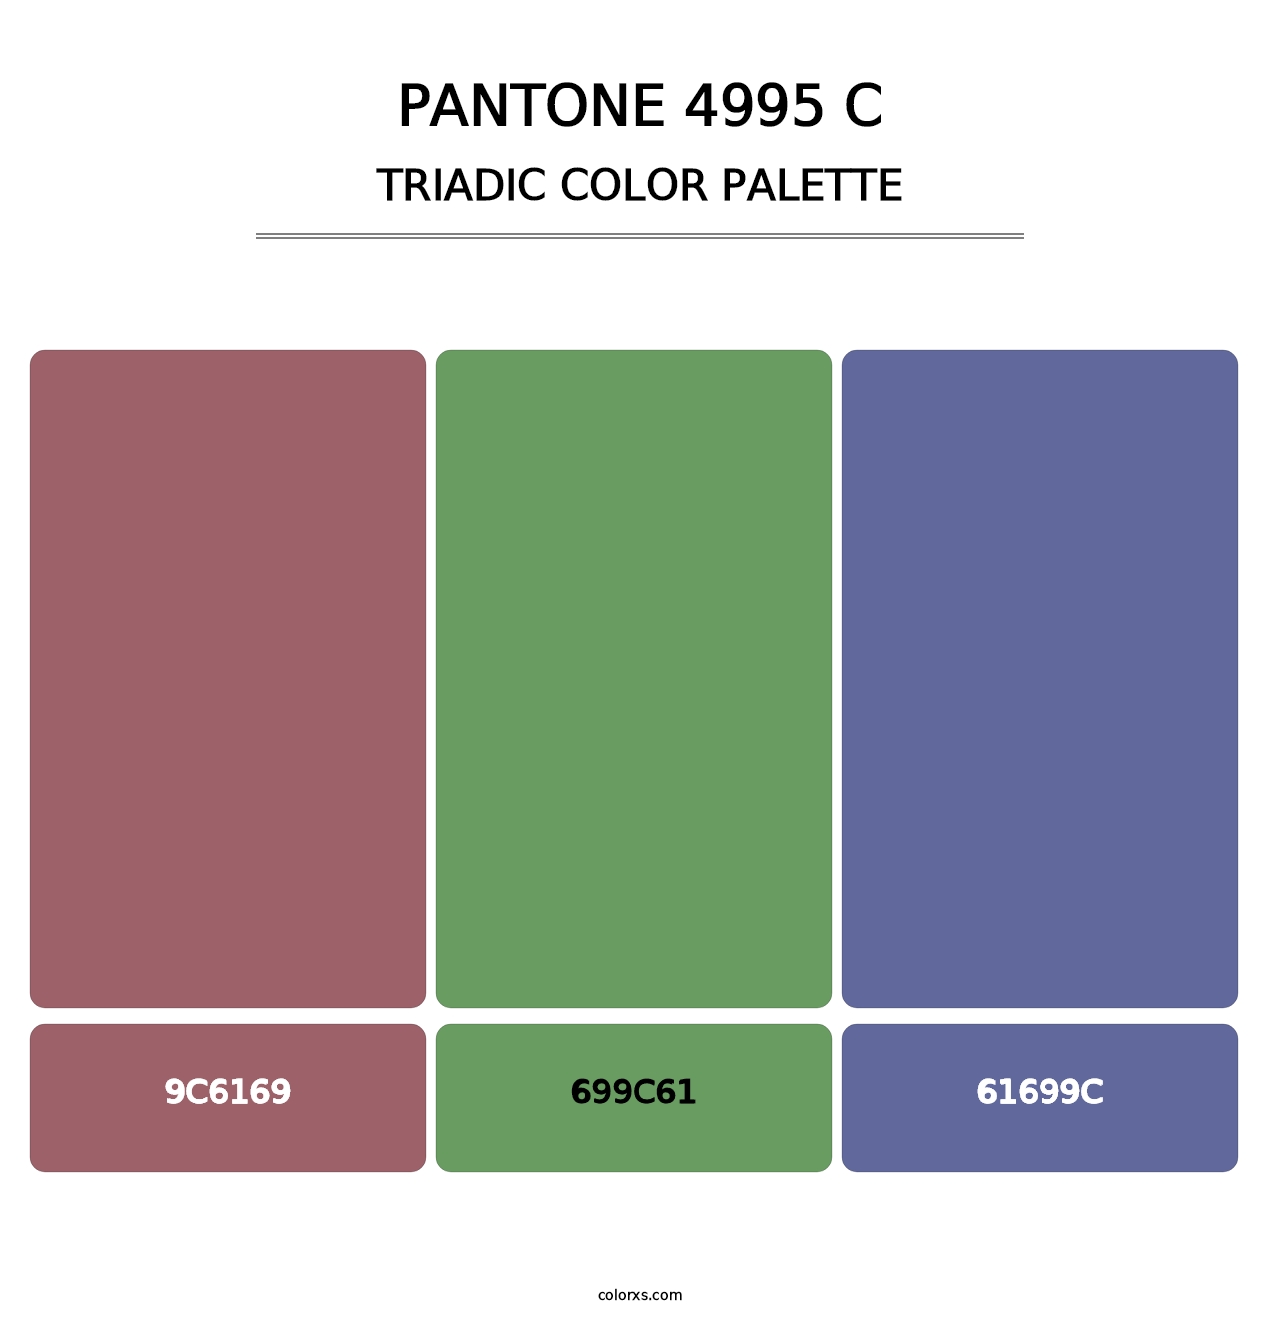 PANTONE 4995 C - Triadic Color Palette